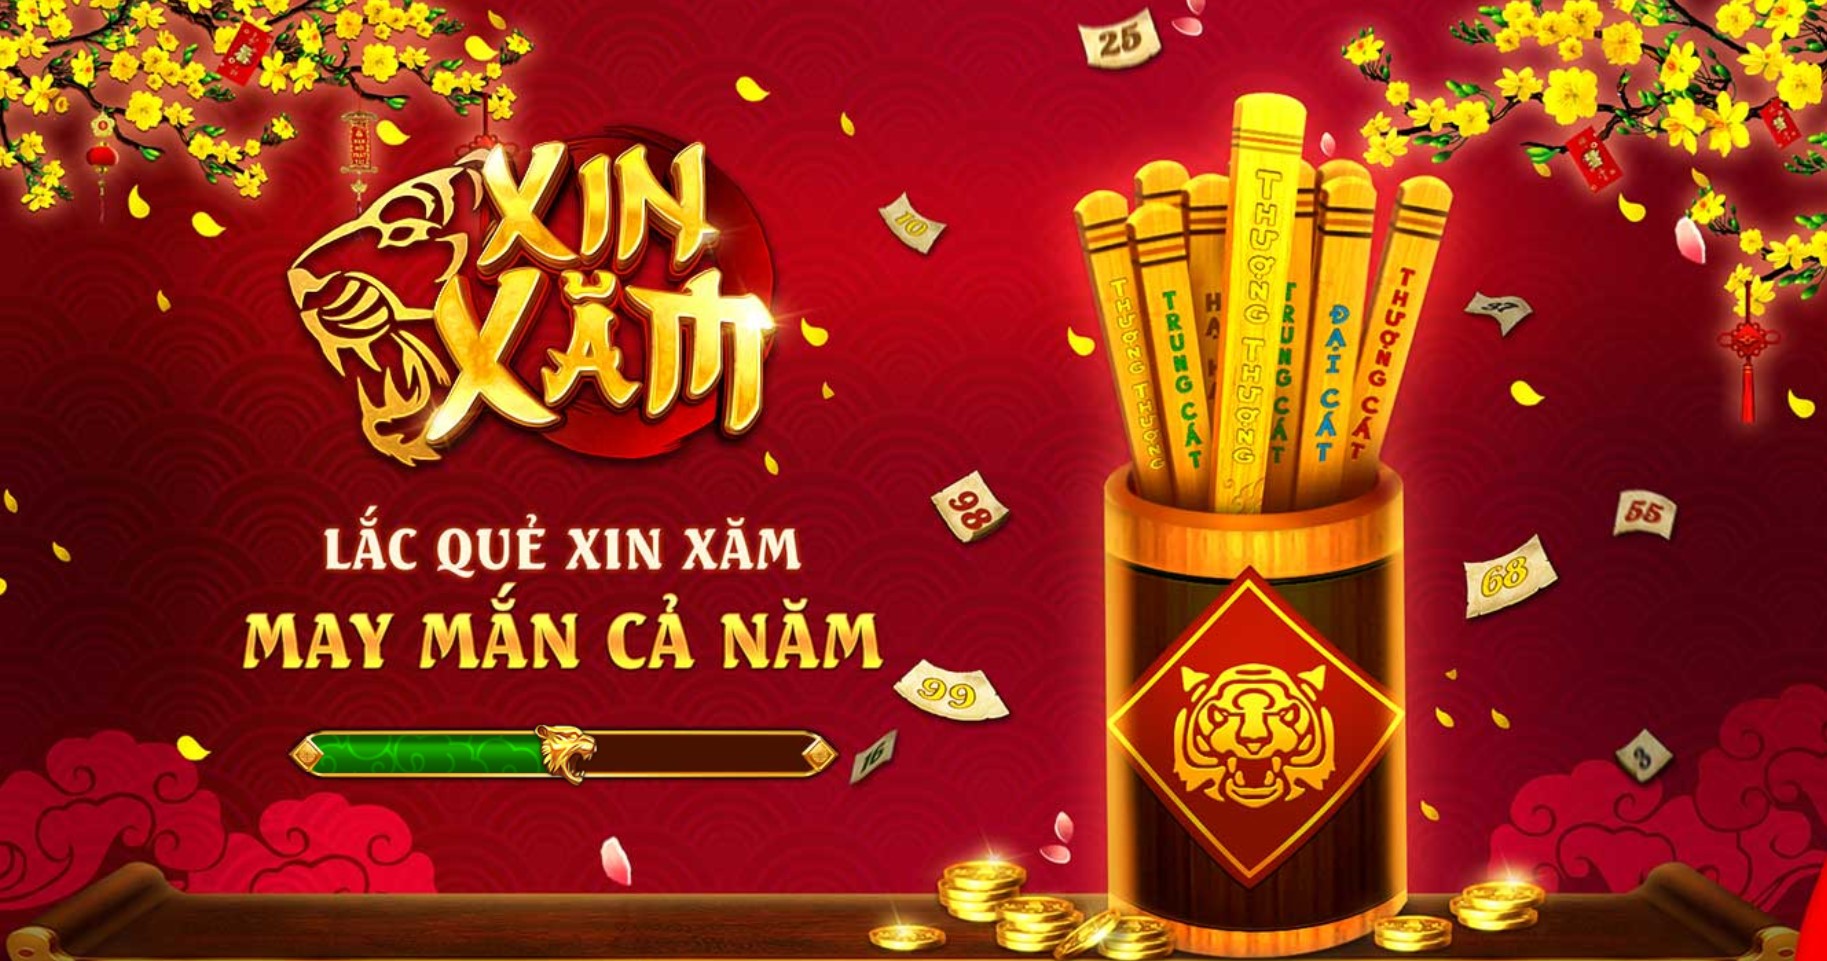 Game nohu Xin xăm sv88 là gì?